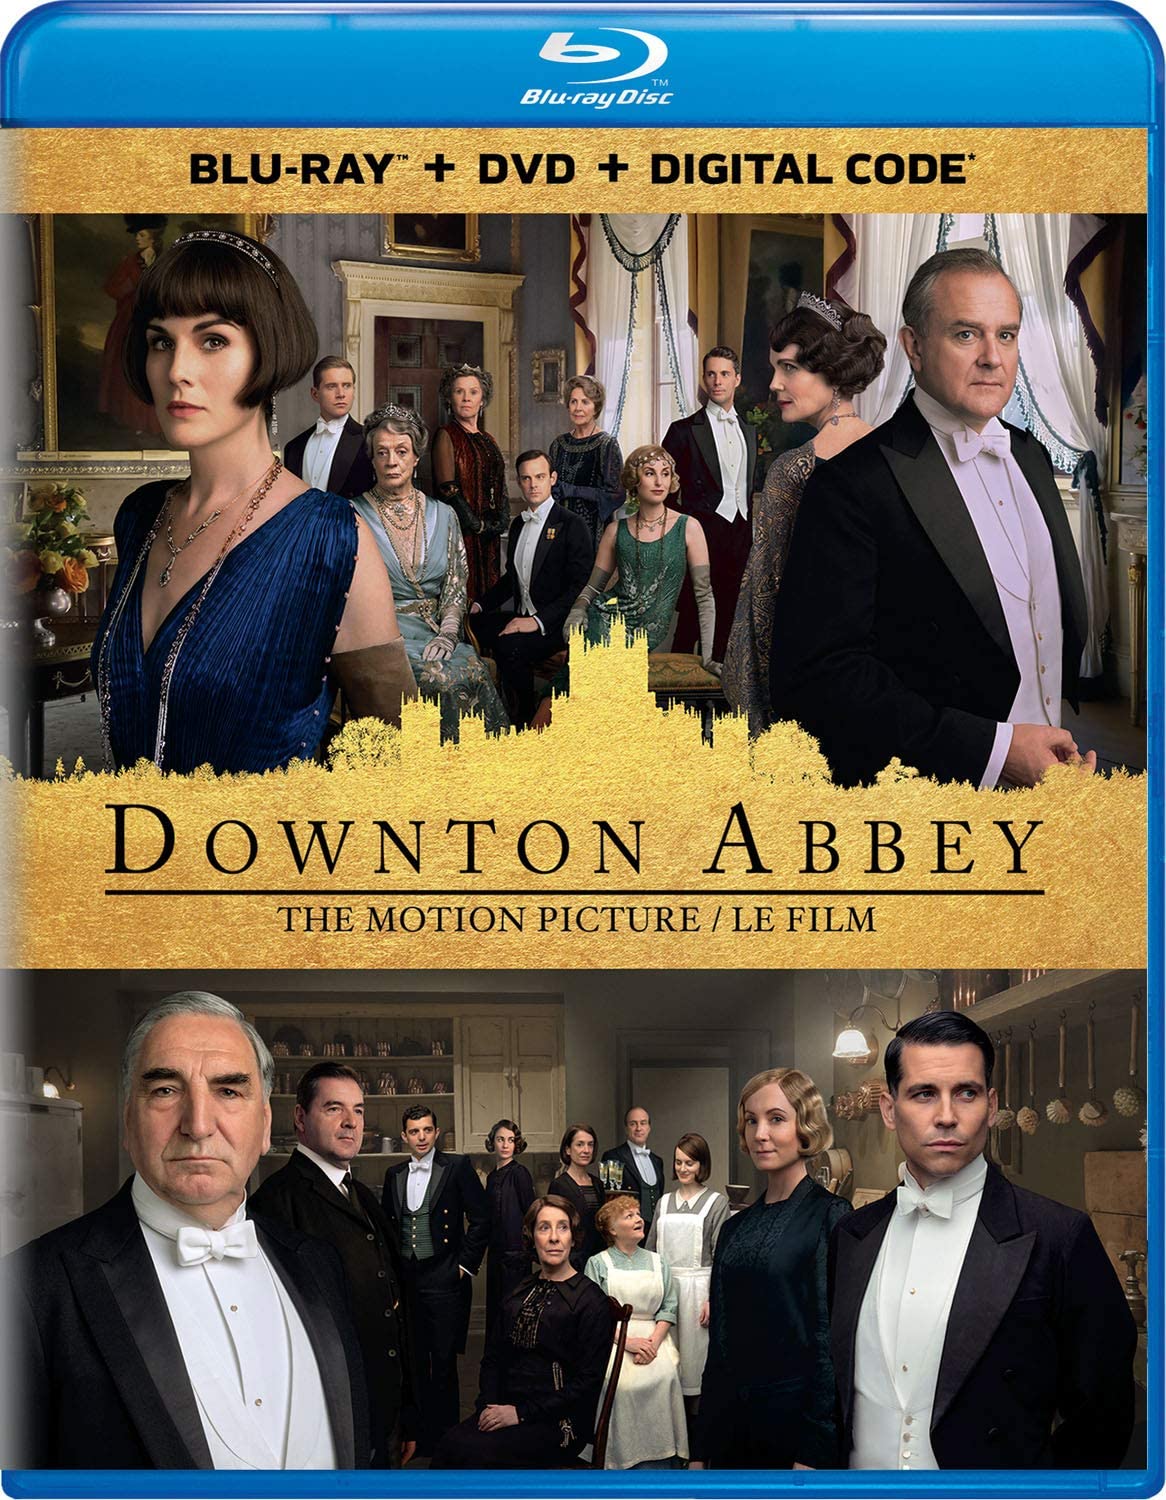 Downton Abbey [Blu-ray + DVD + Digital] (Bilingual) [Blu-ray]